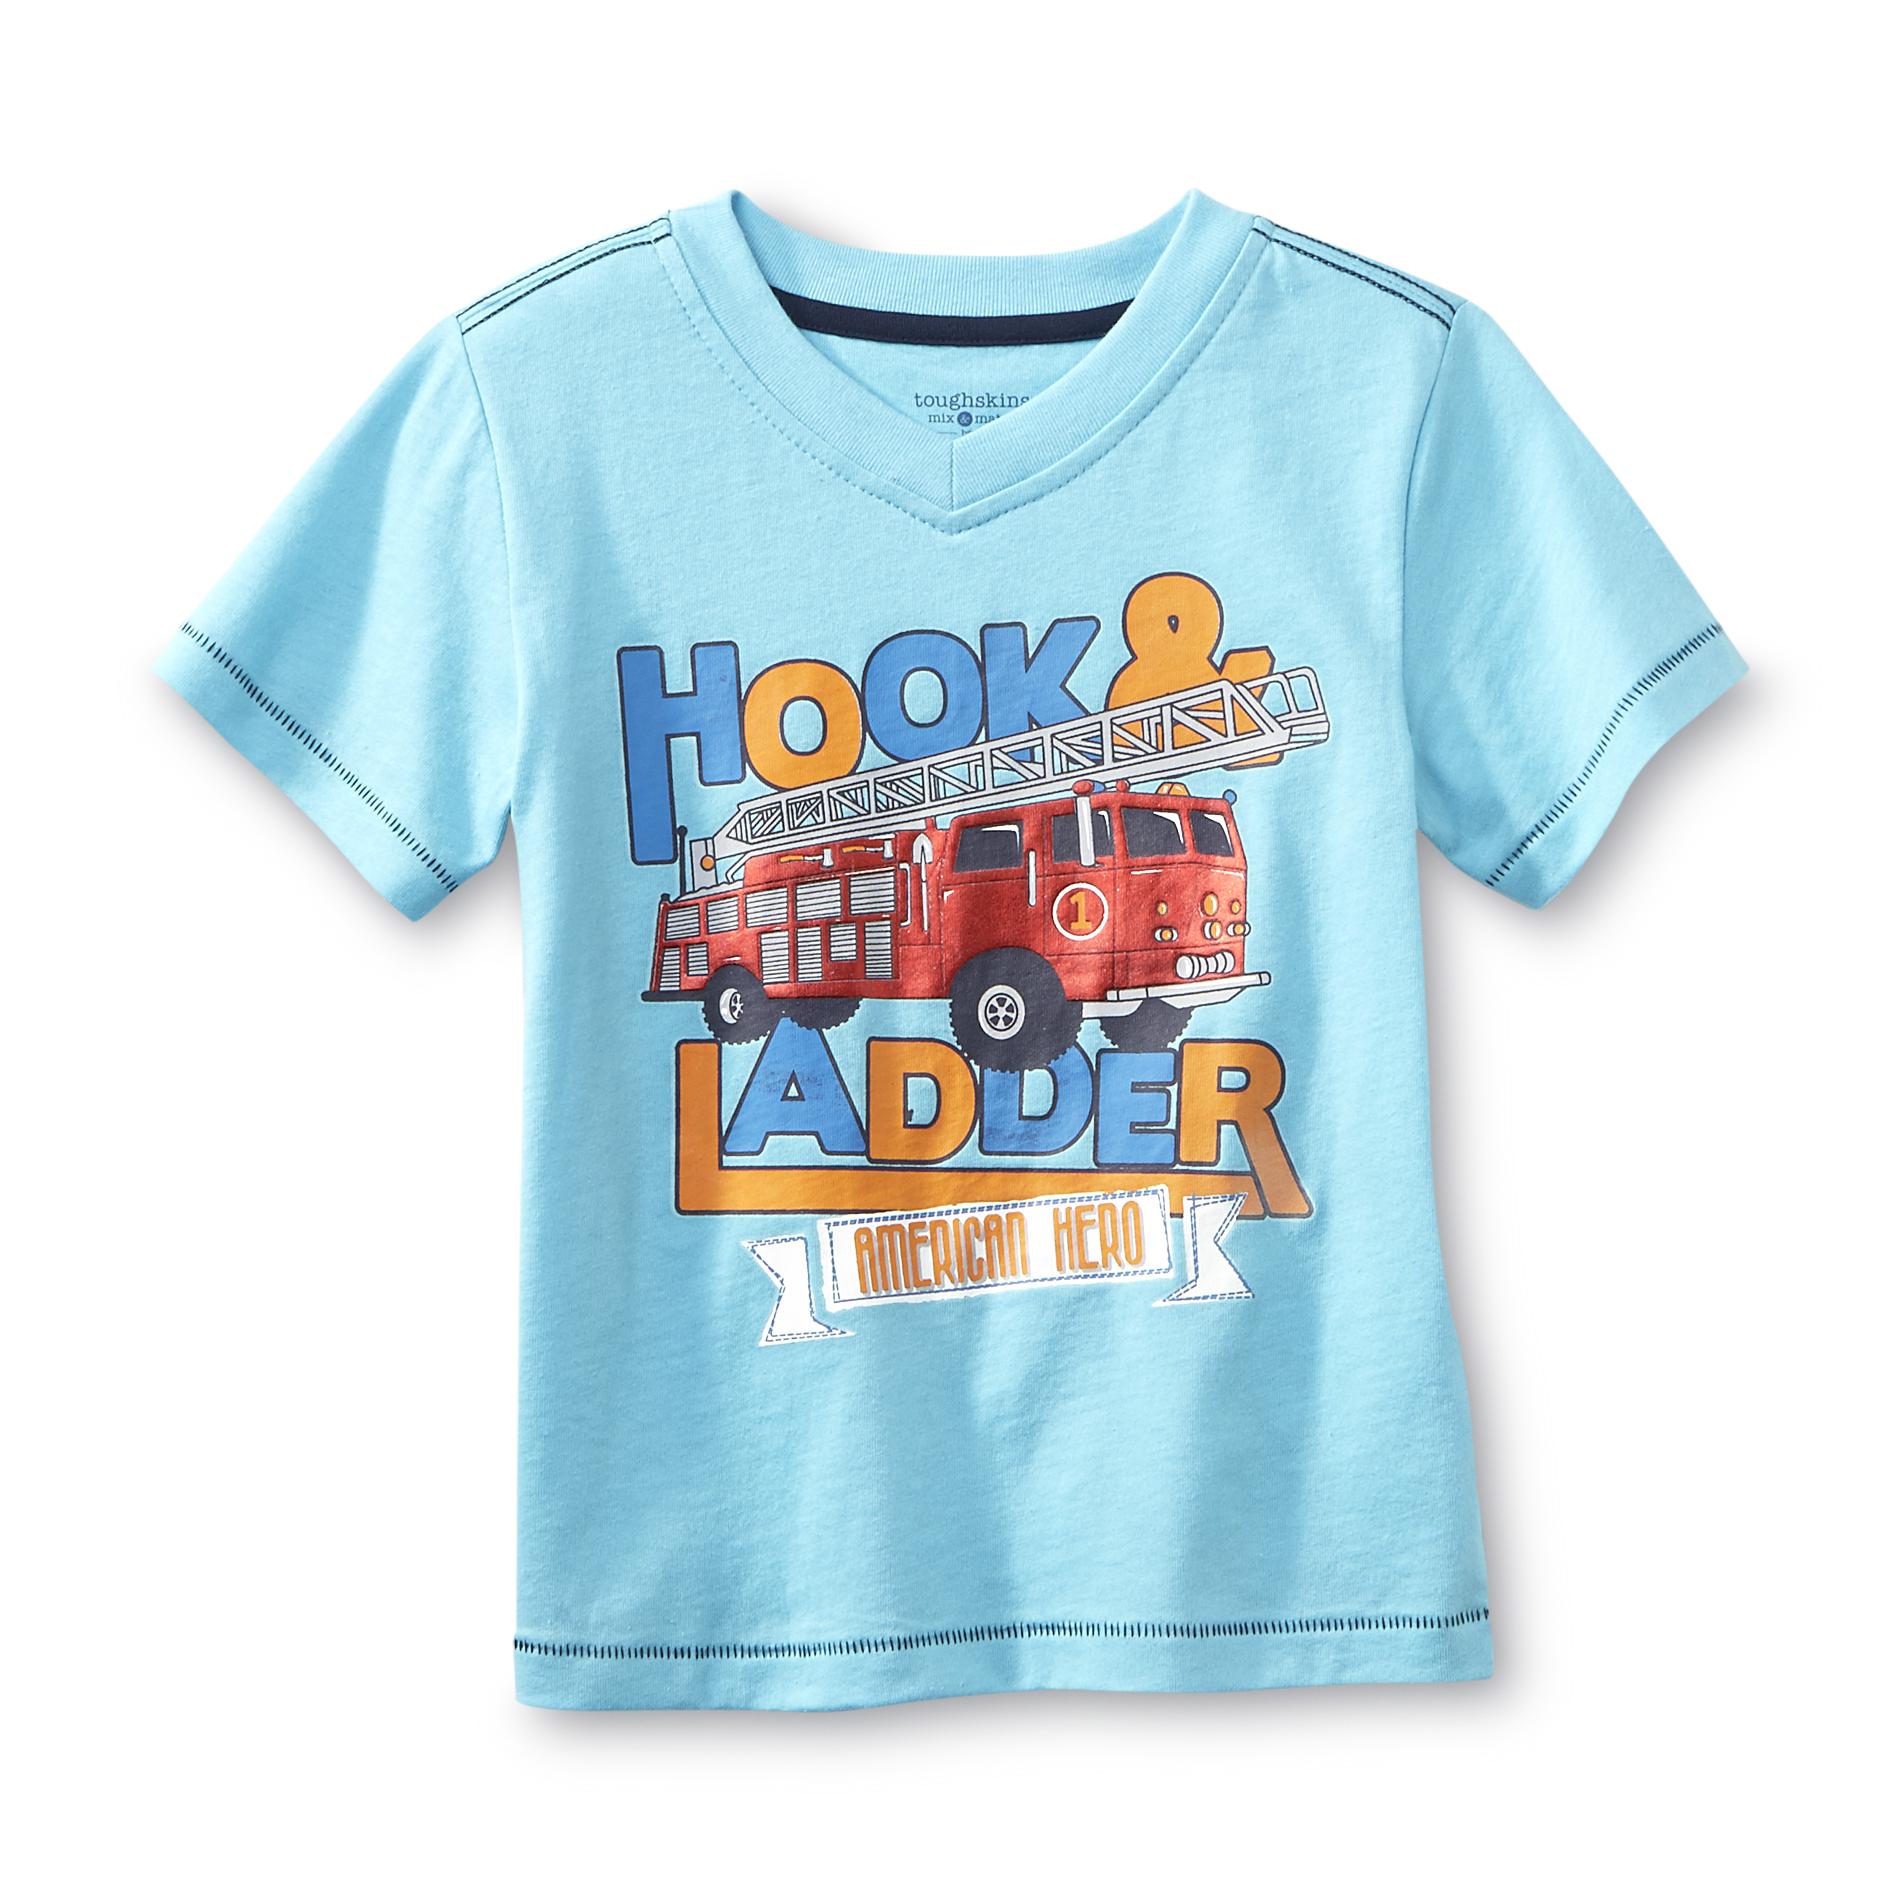 Toughskins Infant & Toddler Boy's T-Shirt - Fire Truck